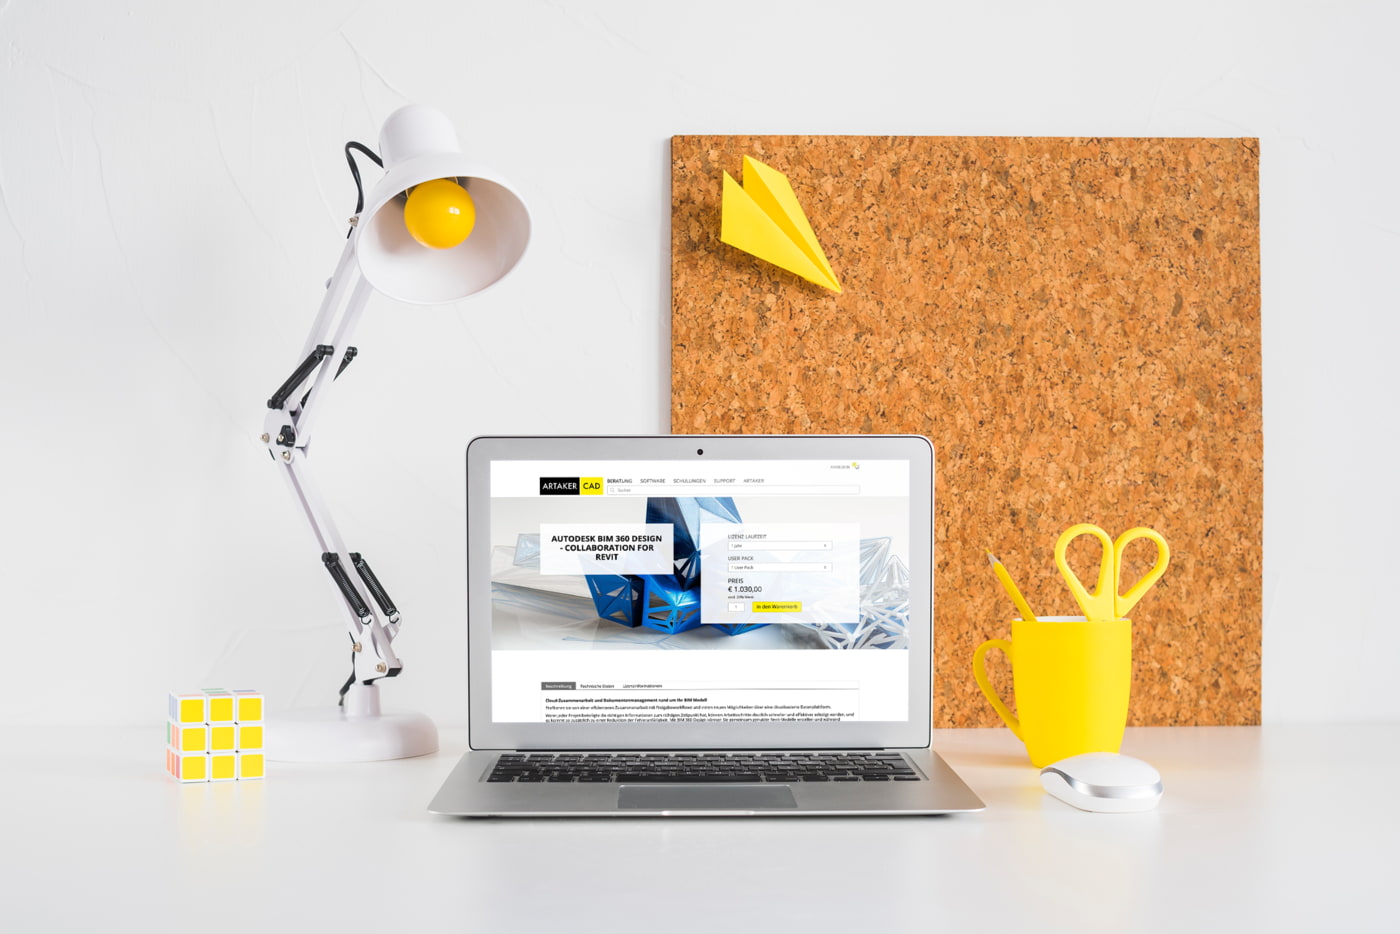 artaker.com Website sichtbar in Laptop auf Schreibtisch mit Lampe und Pinwand im Hintergrund